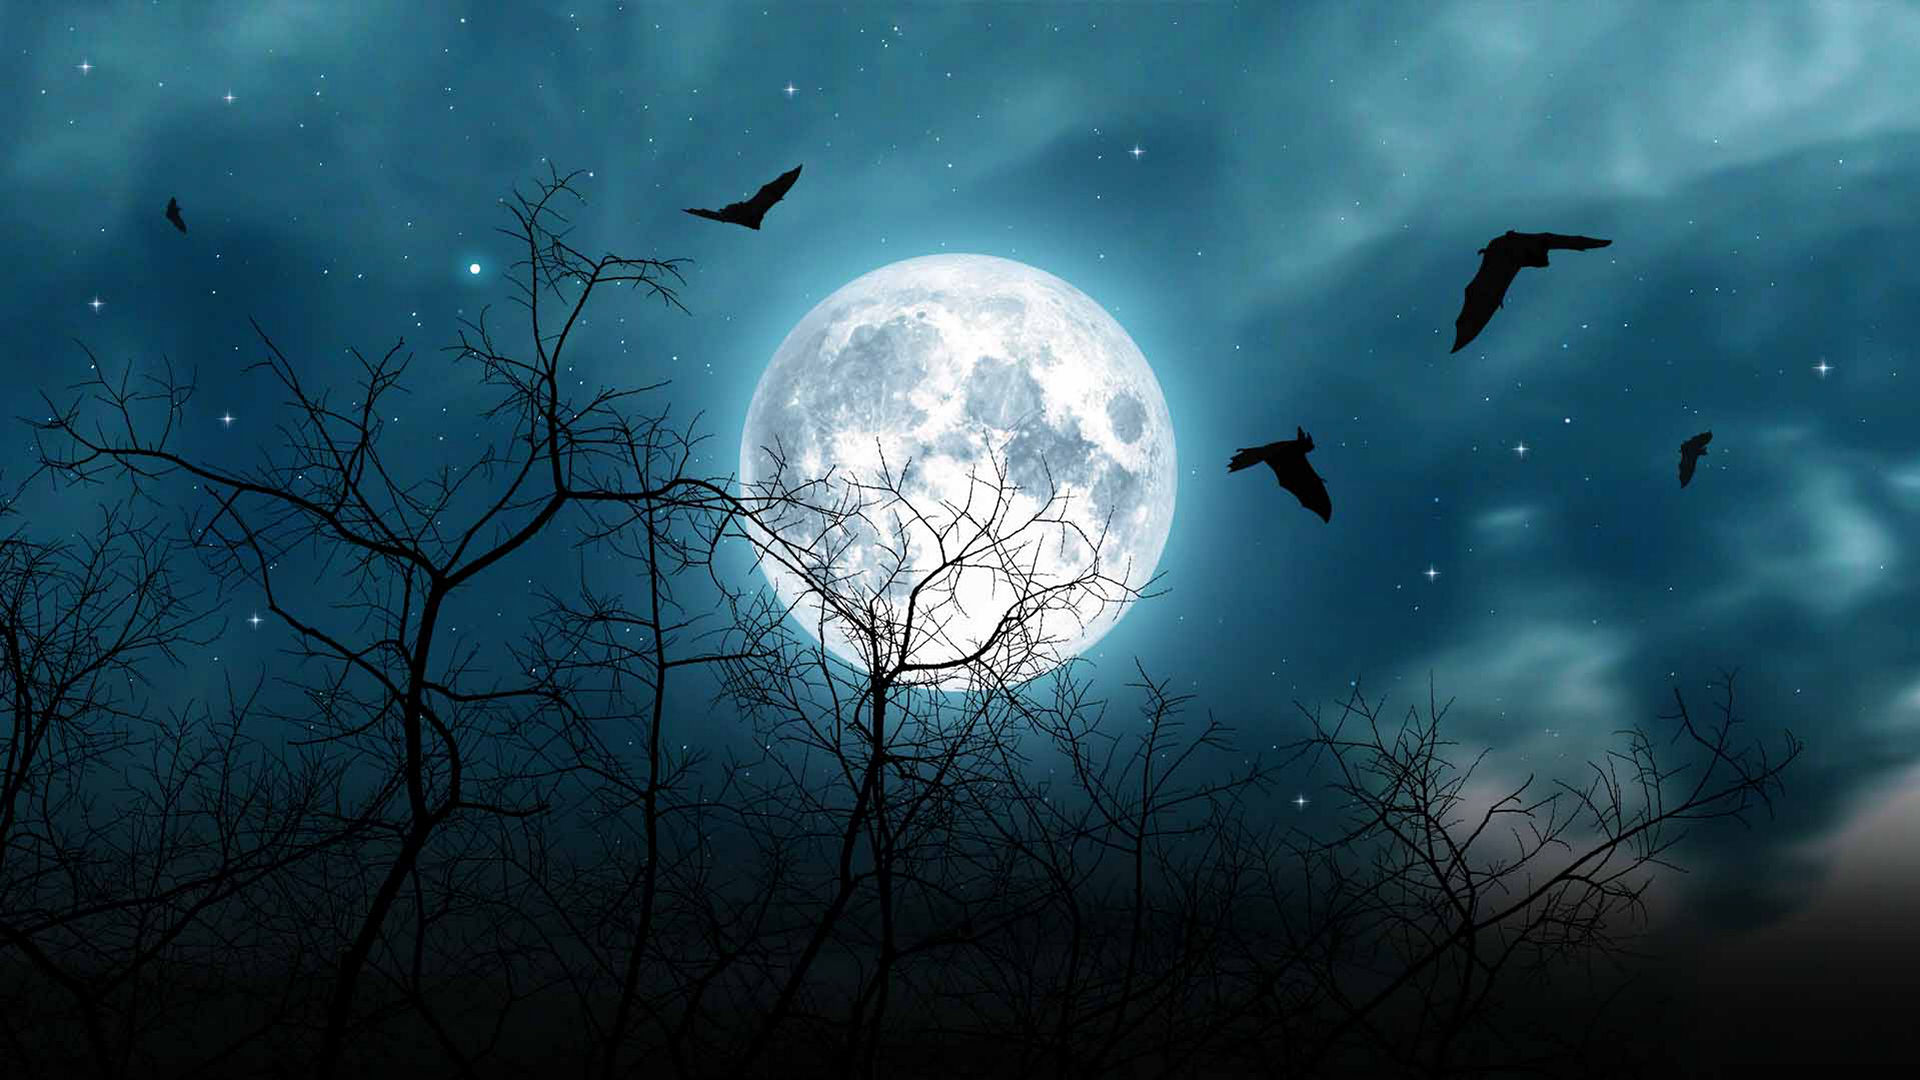 Aprecie a Lua Azul do Halloween e Urano no auge de seu brilho!